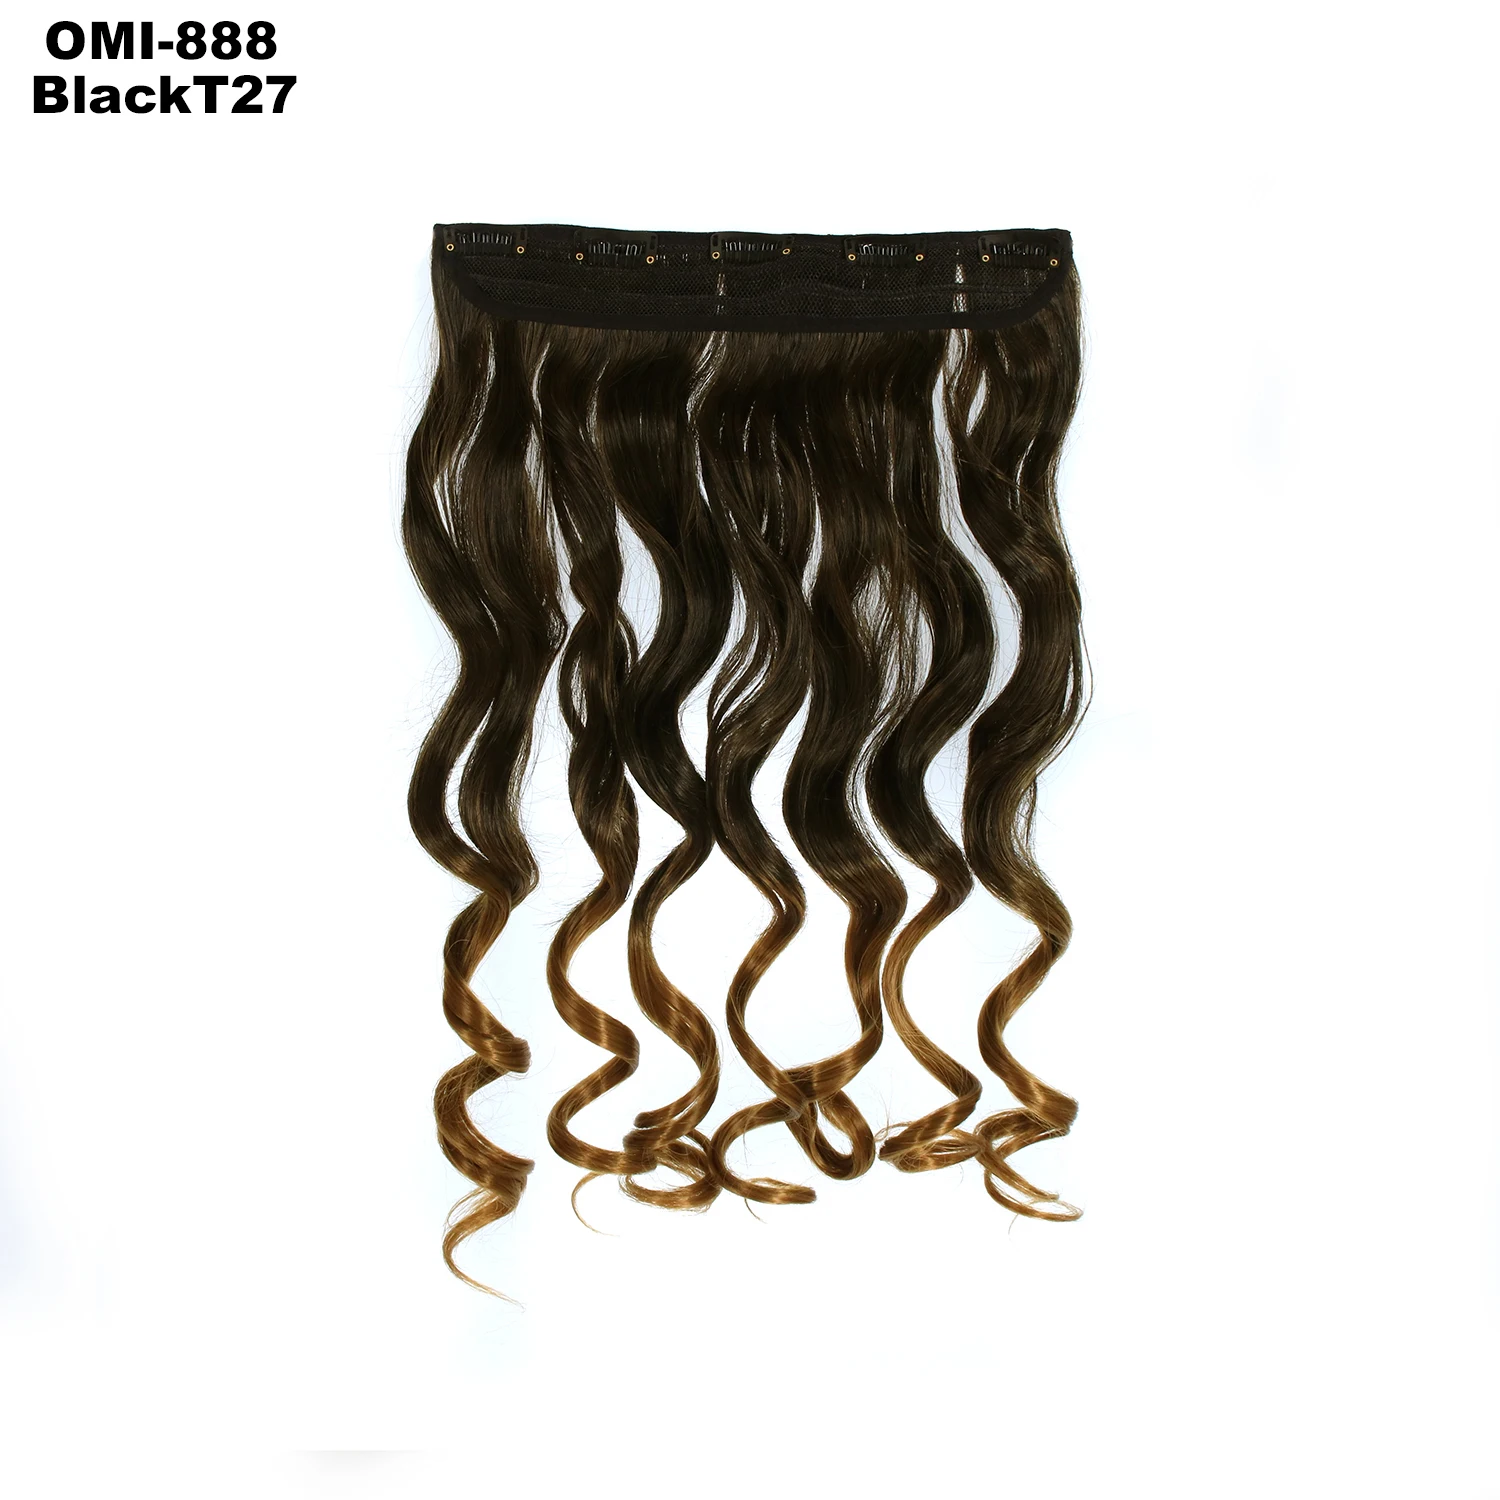 Similler, 100 г, 60 см, длинные прямые вьющиеся женские волосы на заколках, черные, коричневые, высокая температура, синтетические волосы, Омбре, чистые - Цвет: 8BlackT27